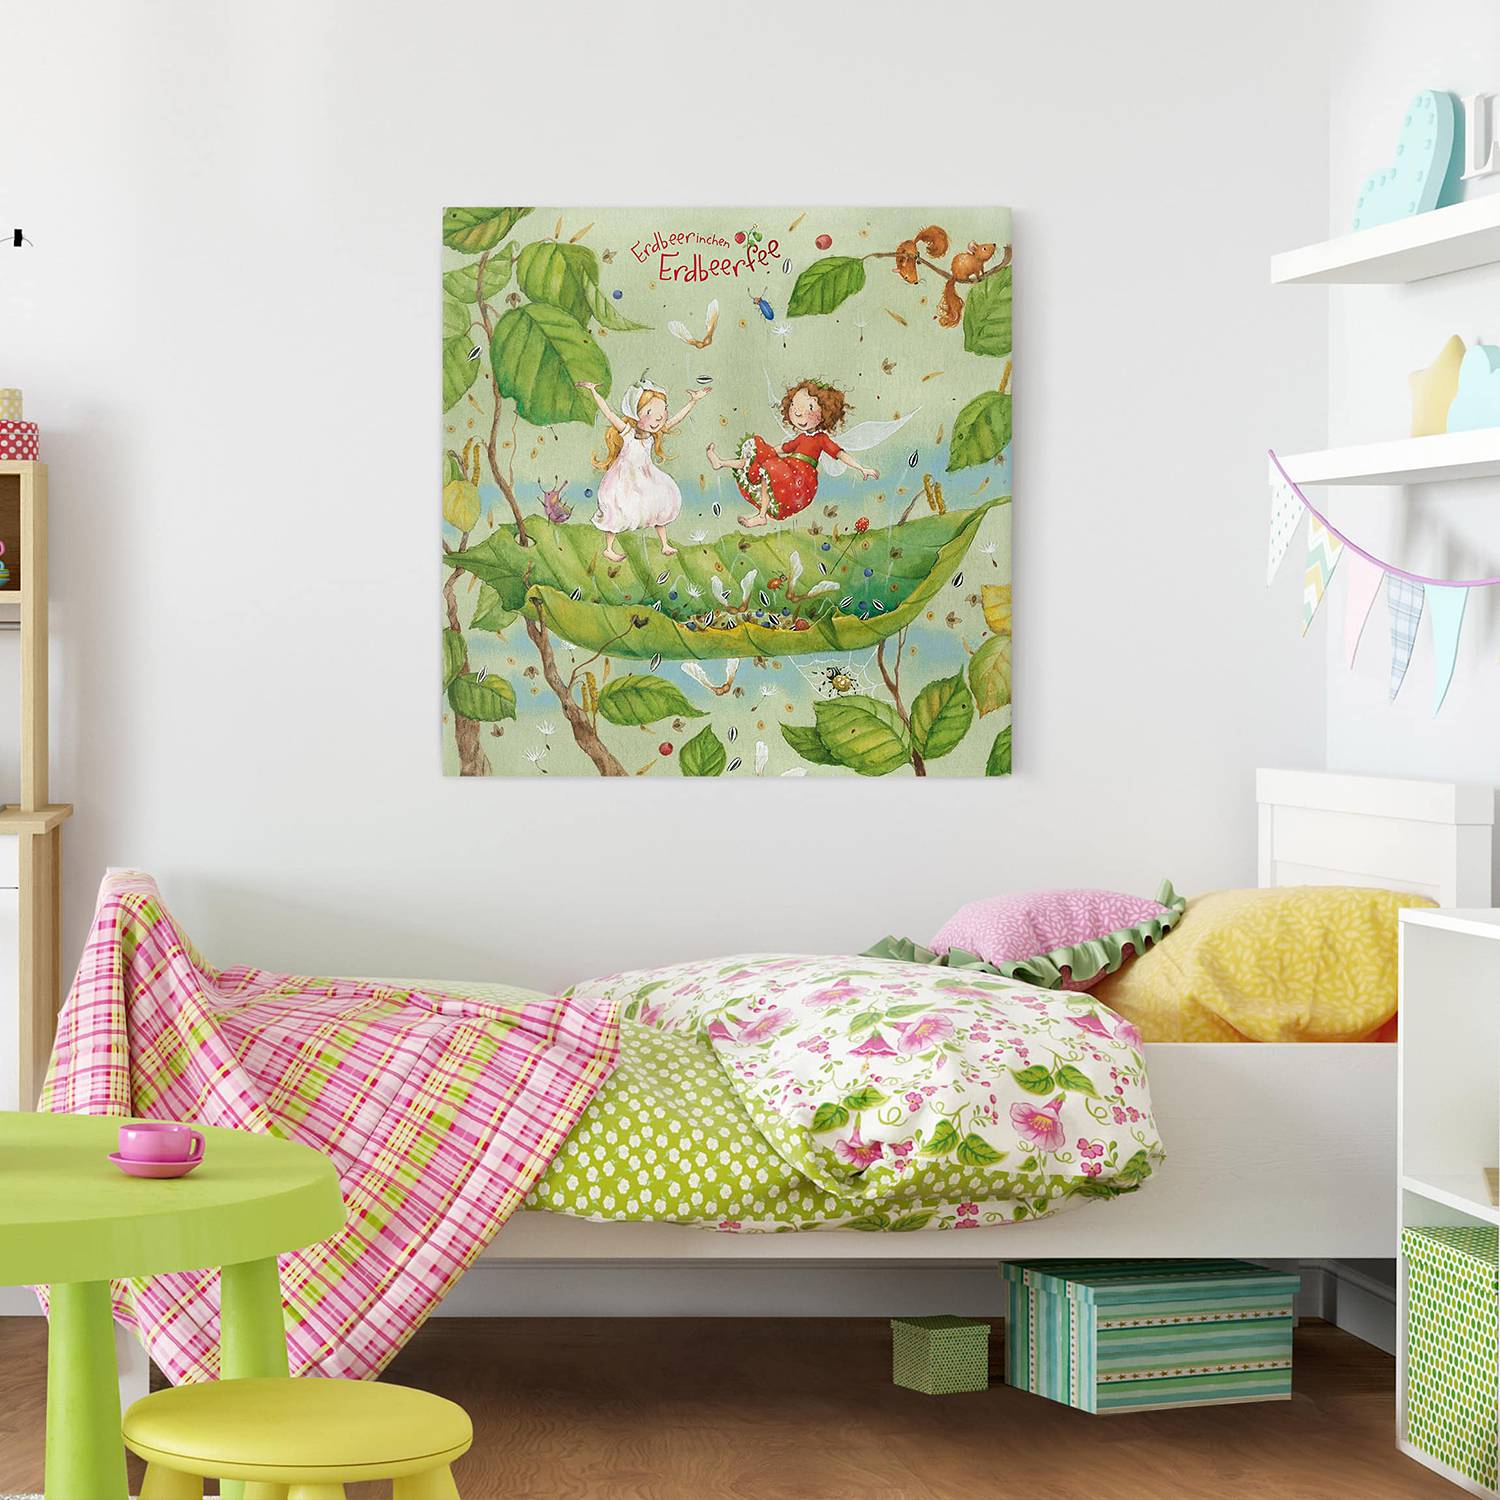 weitere Kinderzimmer-Bilder und & & kaufen bei Günstig Rahmen. Bilder Möbel online